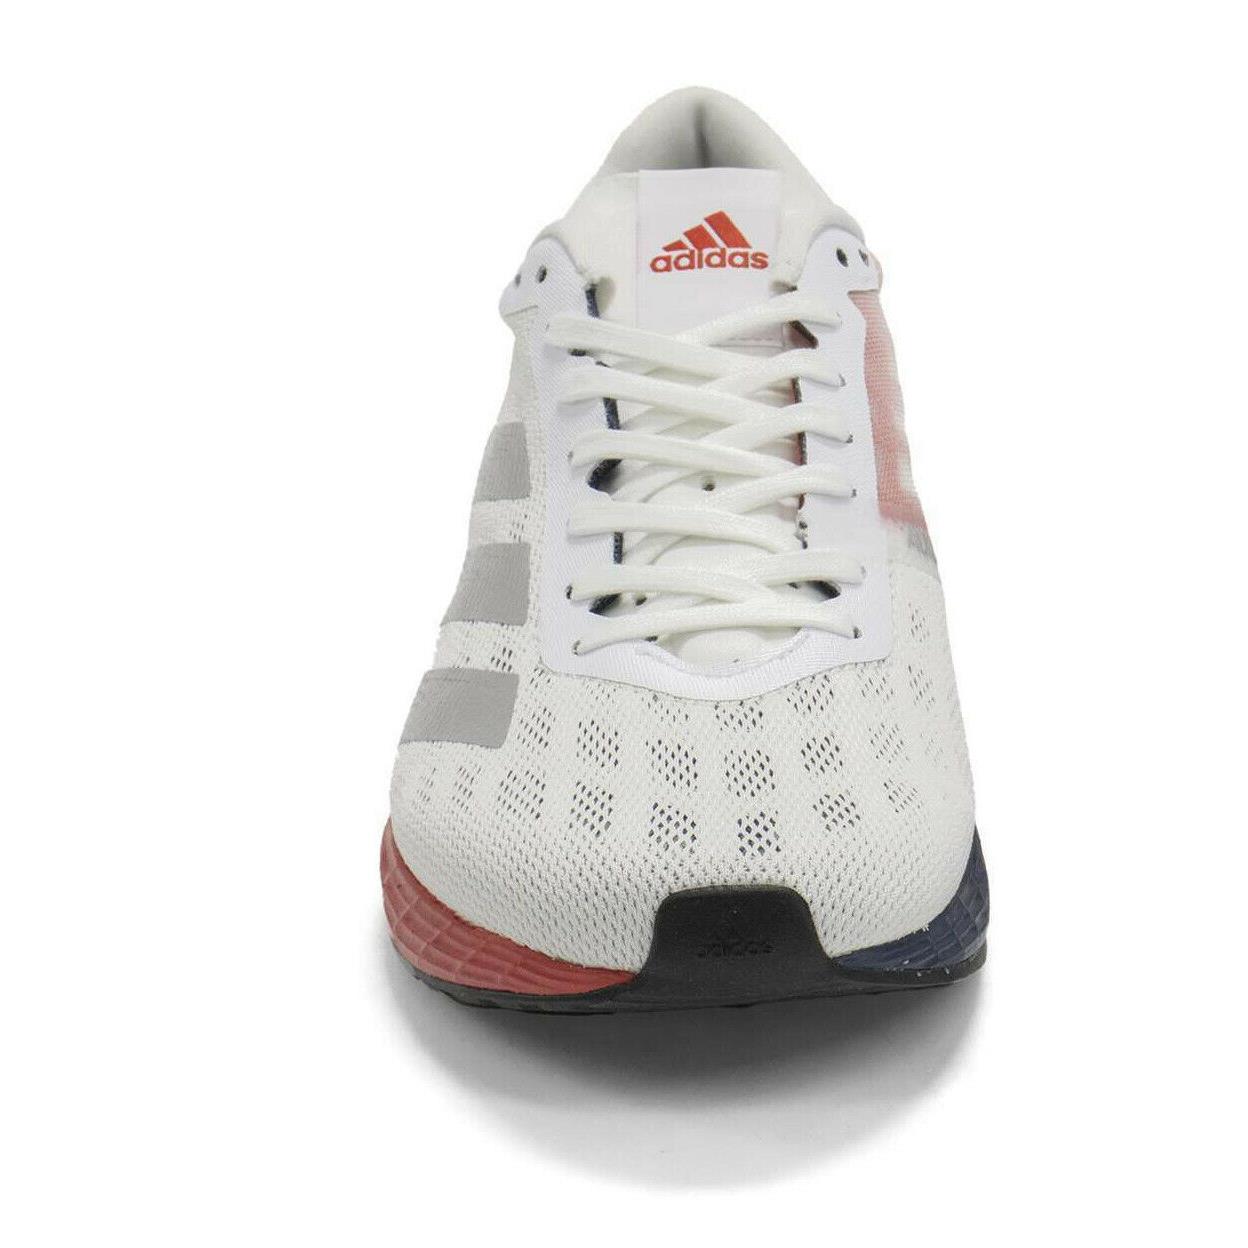 Adidas shoes adizero boston - White 2